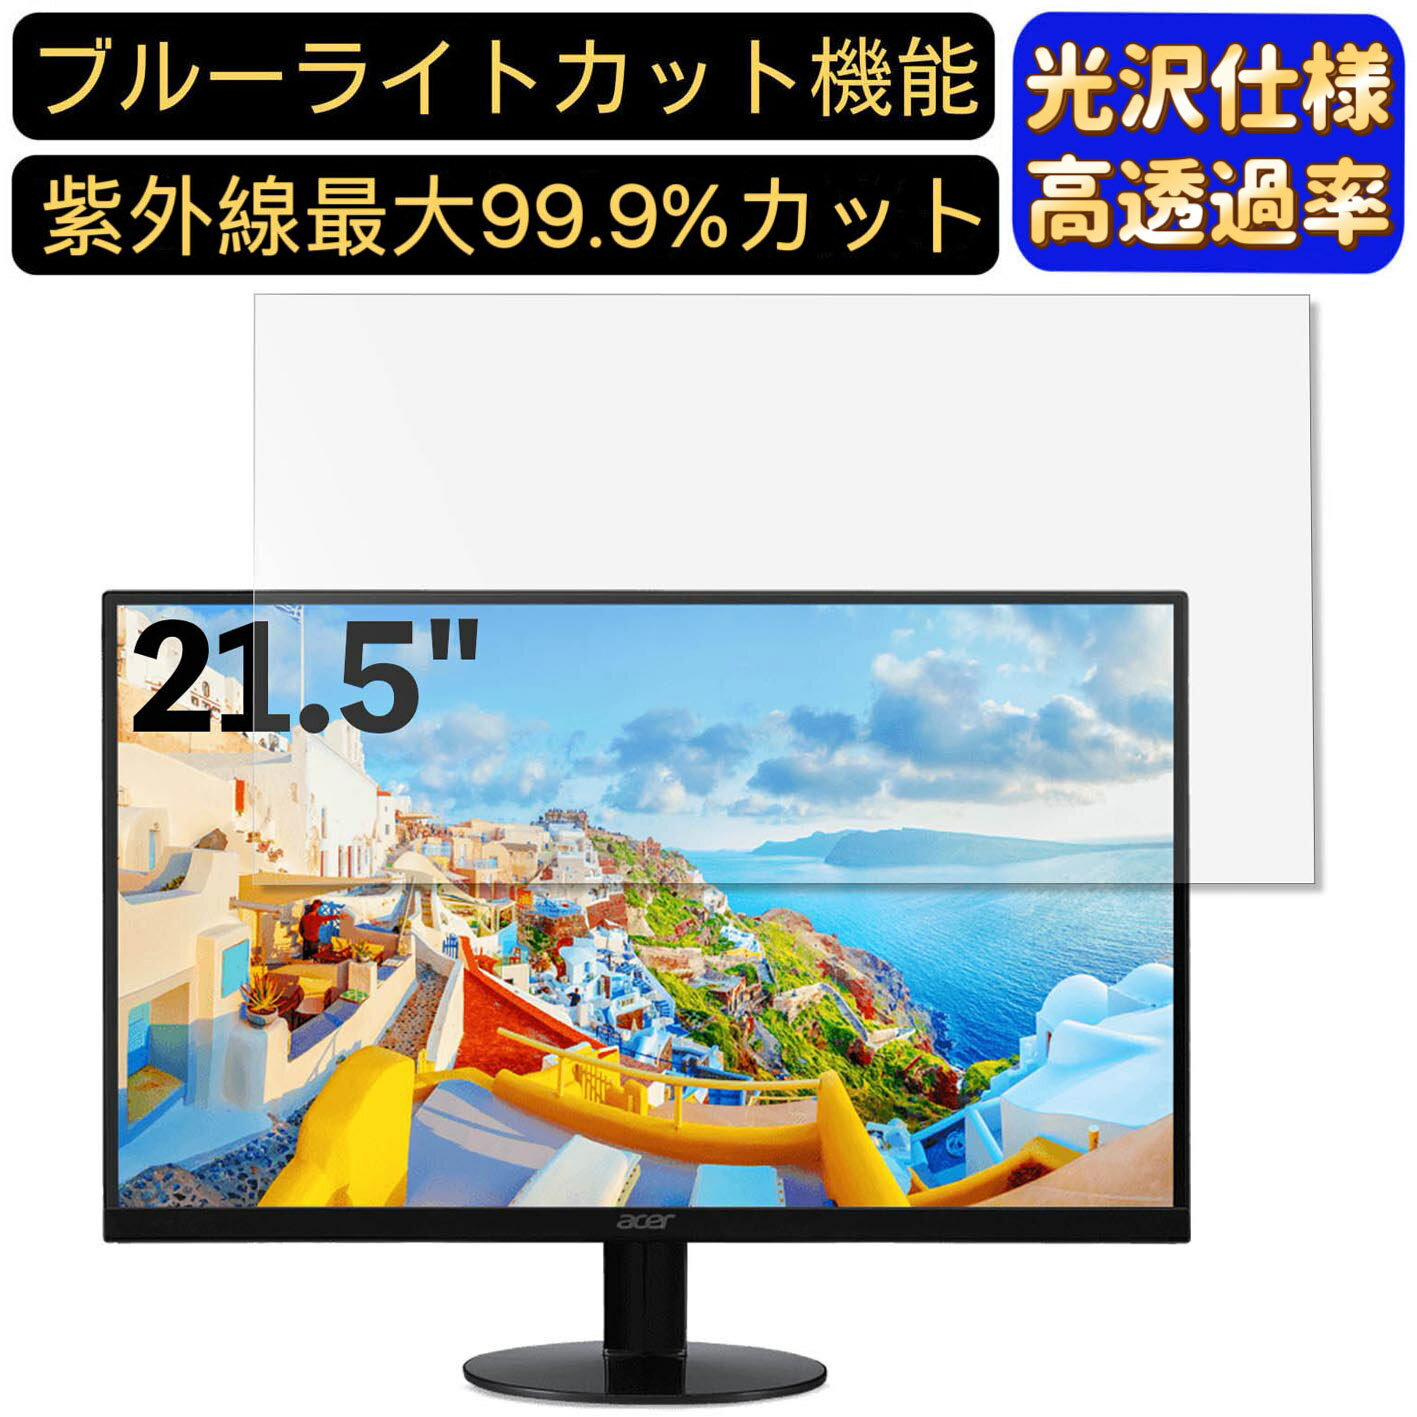 【ポイント2倍】Acer SA220QAbmi 21.5イン